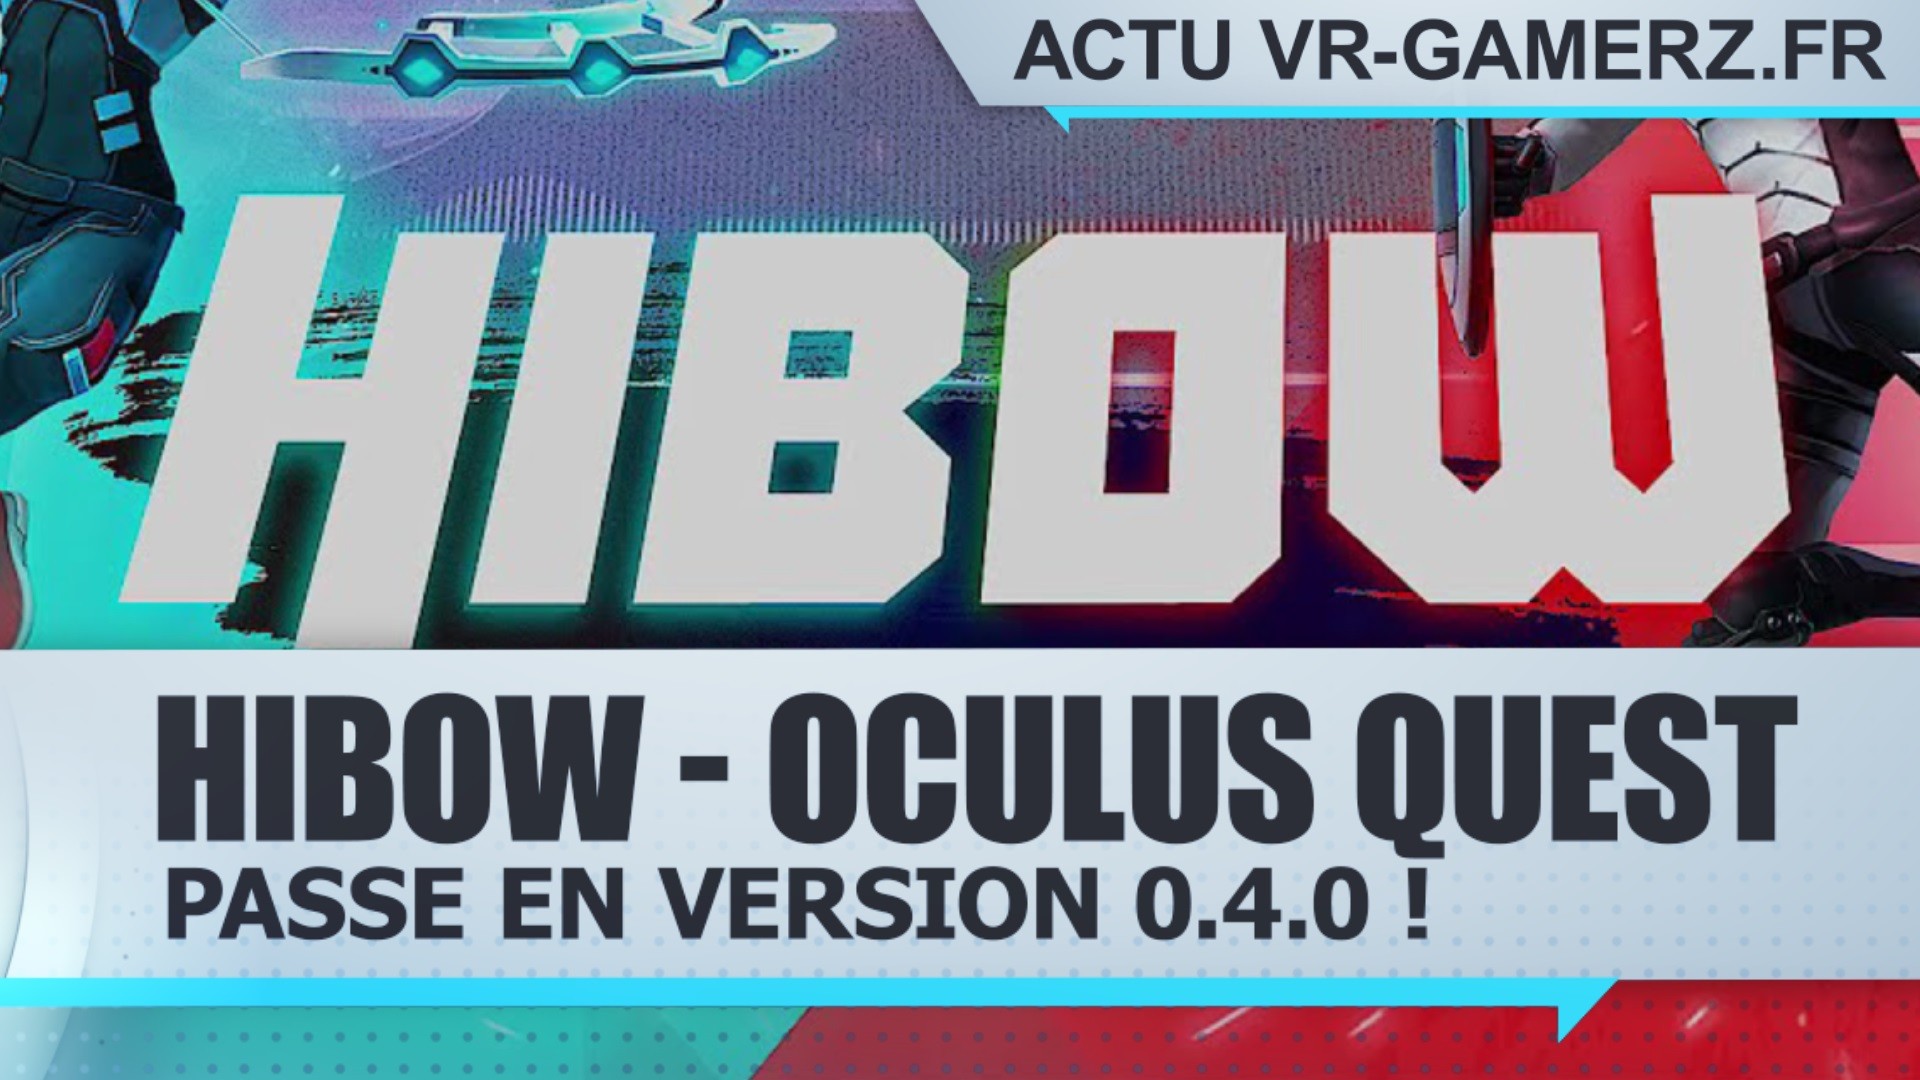 Hibow Passe en version 0.4.0 sur Oculus quest !